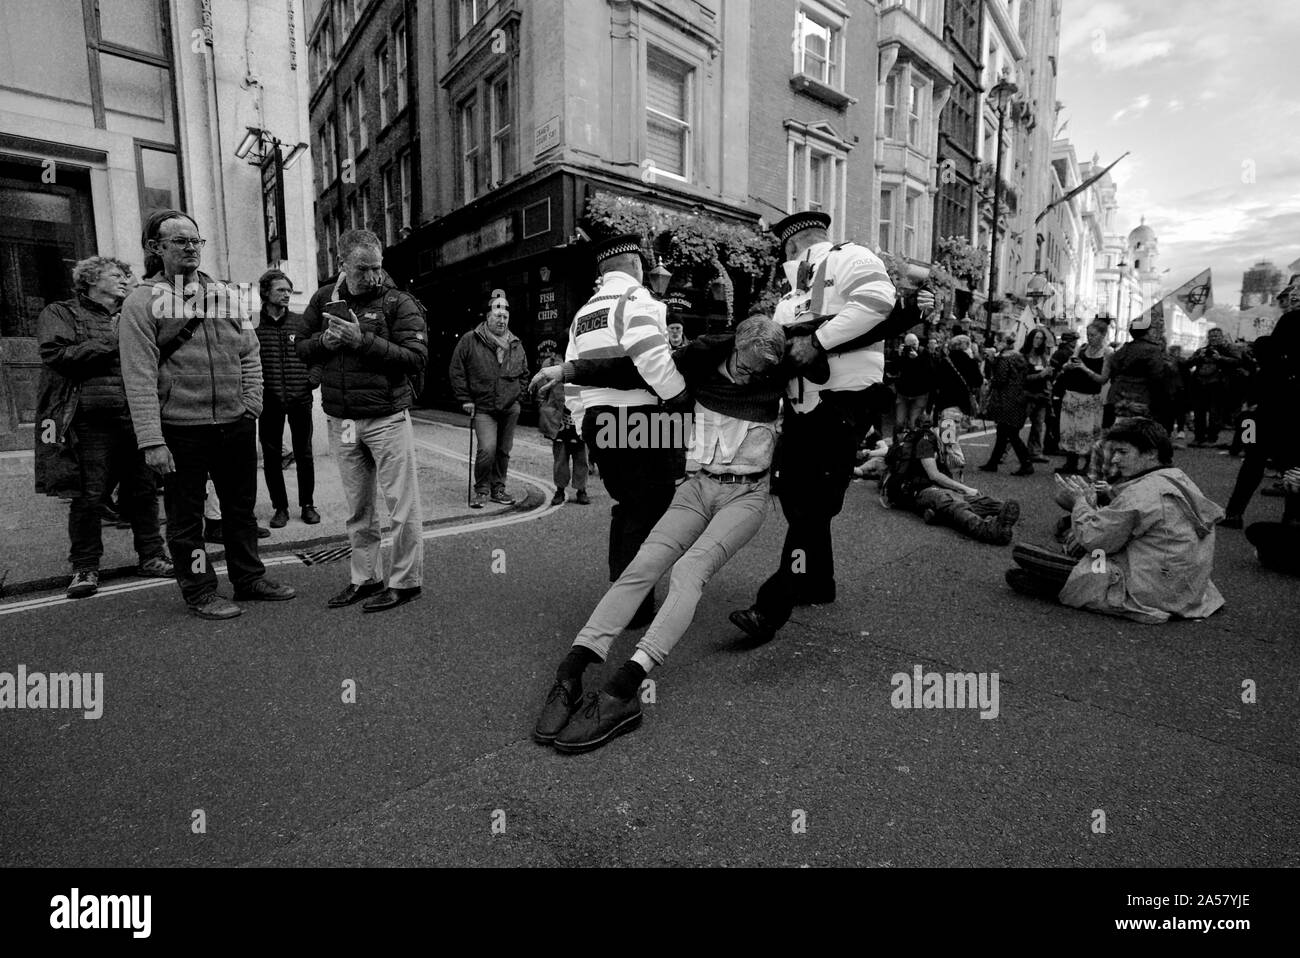 Un membro del clima gruppo di protesta ribellione di estinzione getting arrestato per le proteste in Trafalgar Square a Londra Foto Stock